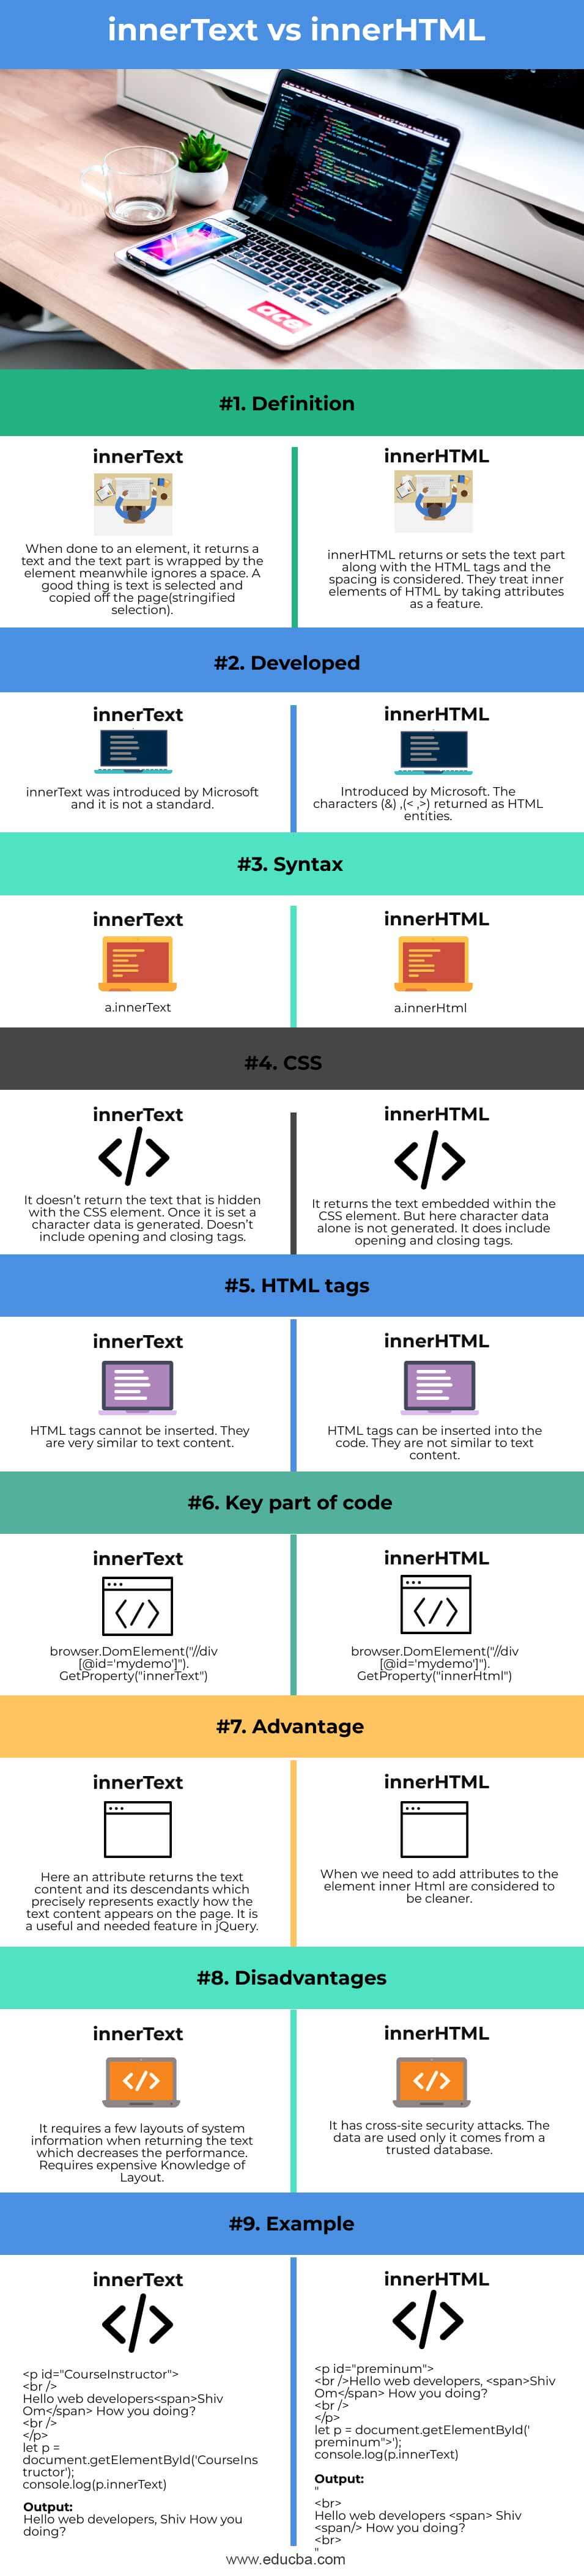 innerText-vs-innerHTML-info